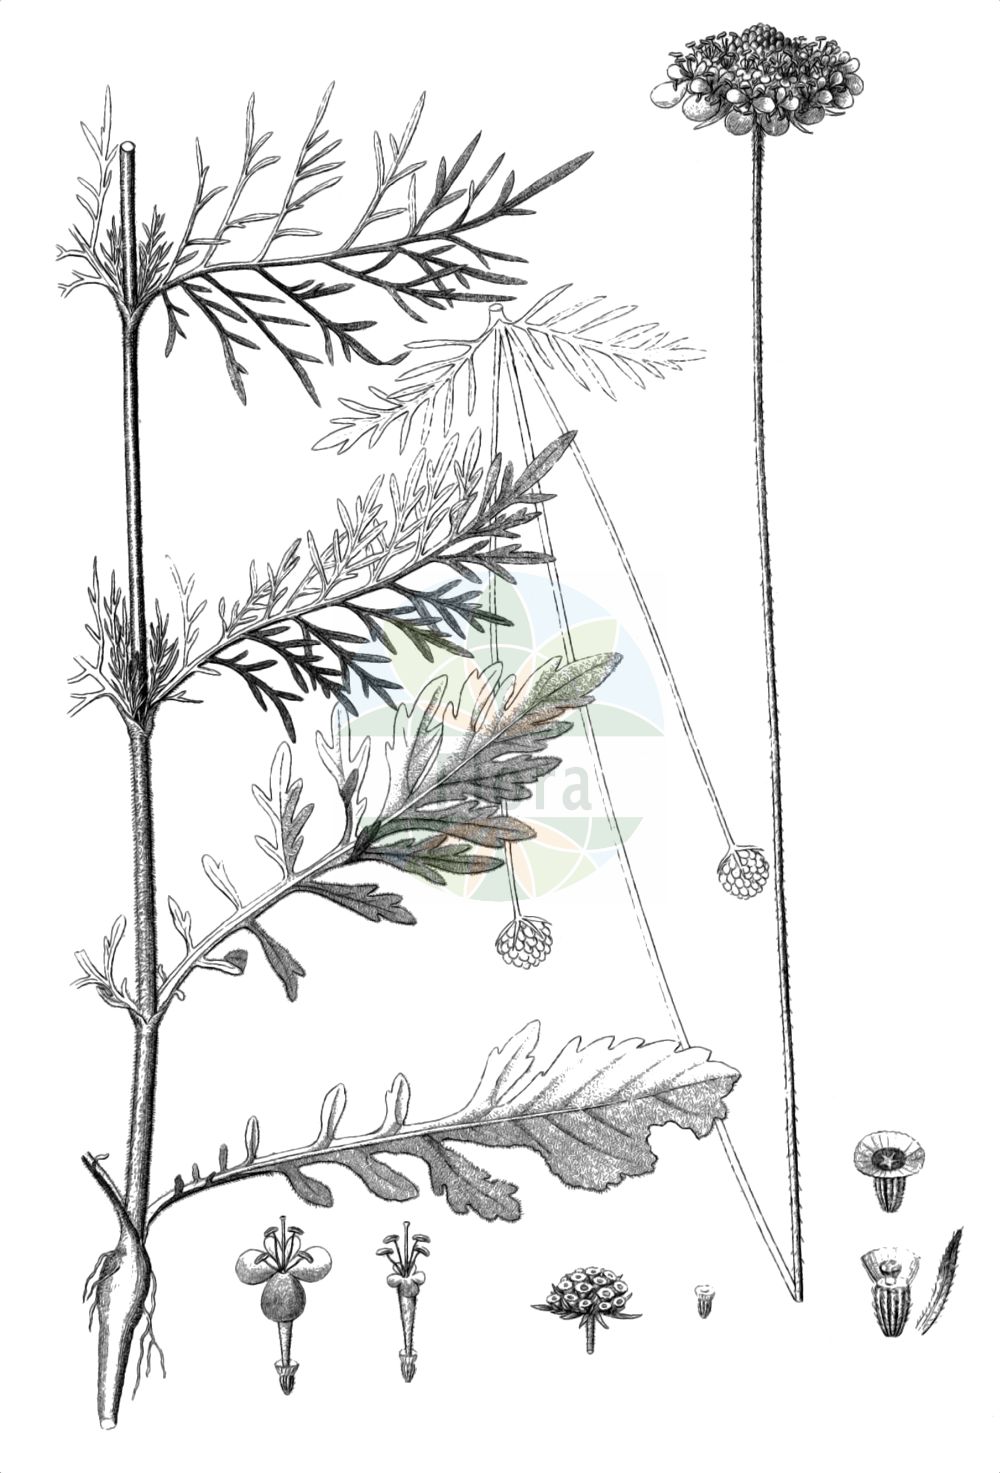 Historische Abbildung von Scabiosa triandra (Südliche Skabiose). Das Bild zeigt Blatt, Bluete, Frucht und Same. ---- Historical Drawing of Scabiosa triandra (Südliche Skabiose). The image is showing leaf, flower, fruit and seed.(Scabiosa triandra,Südliche Skabiose,Scabiosa agrestis,Scabiosa gramuntia,Scabiosa leiocephala,Scabiosa mollis,Scabiosa triandra,Scabiosa triandra subsp. agrestis,Suedliche Skabiose,Scabiosa,Skabiose,Scabious,Caprifoliaceae,Geißblattgewächse,Honeysuckle family,Blatt,Bluete,Frucht,Same,leaf,flower,fruit,seed,Reichenbach (1823-1832))